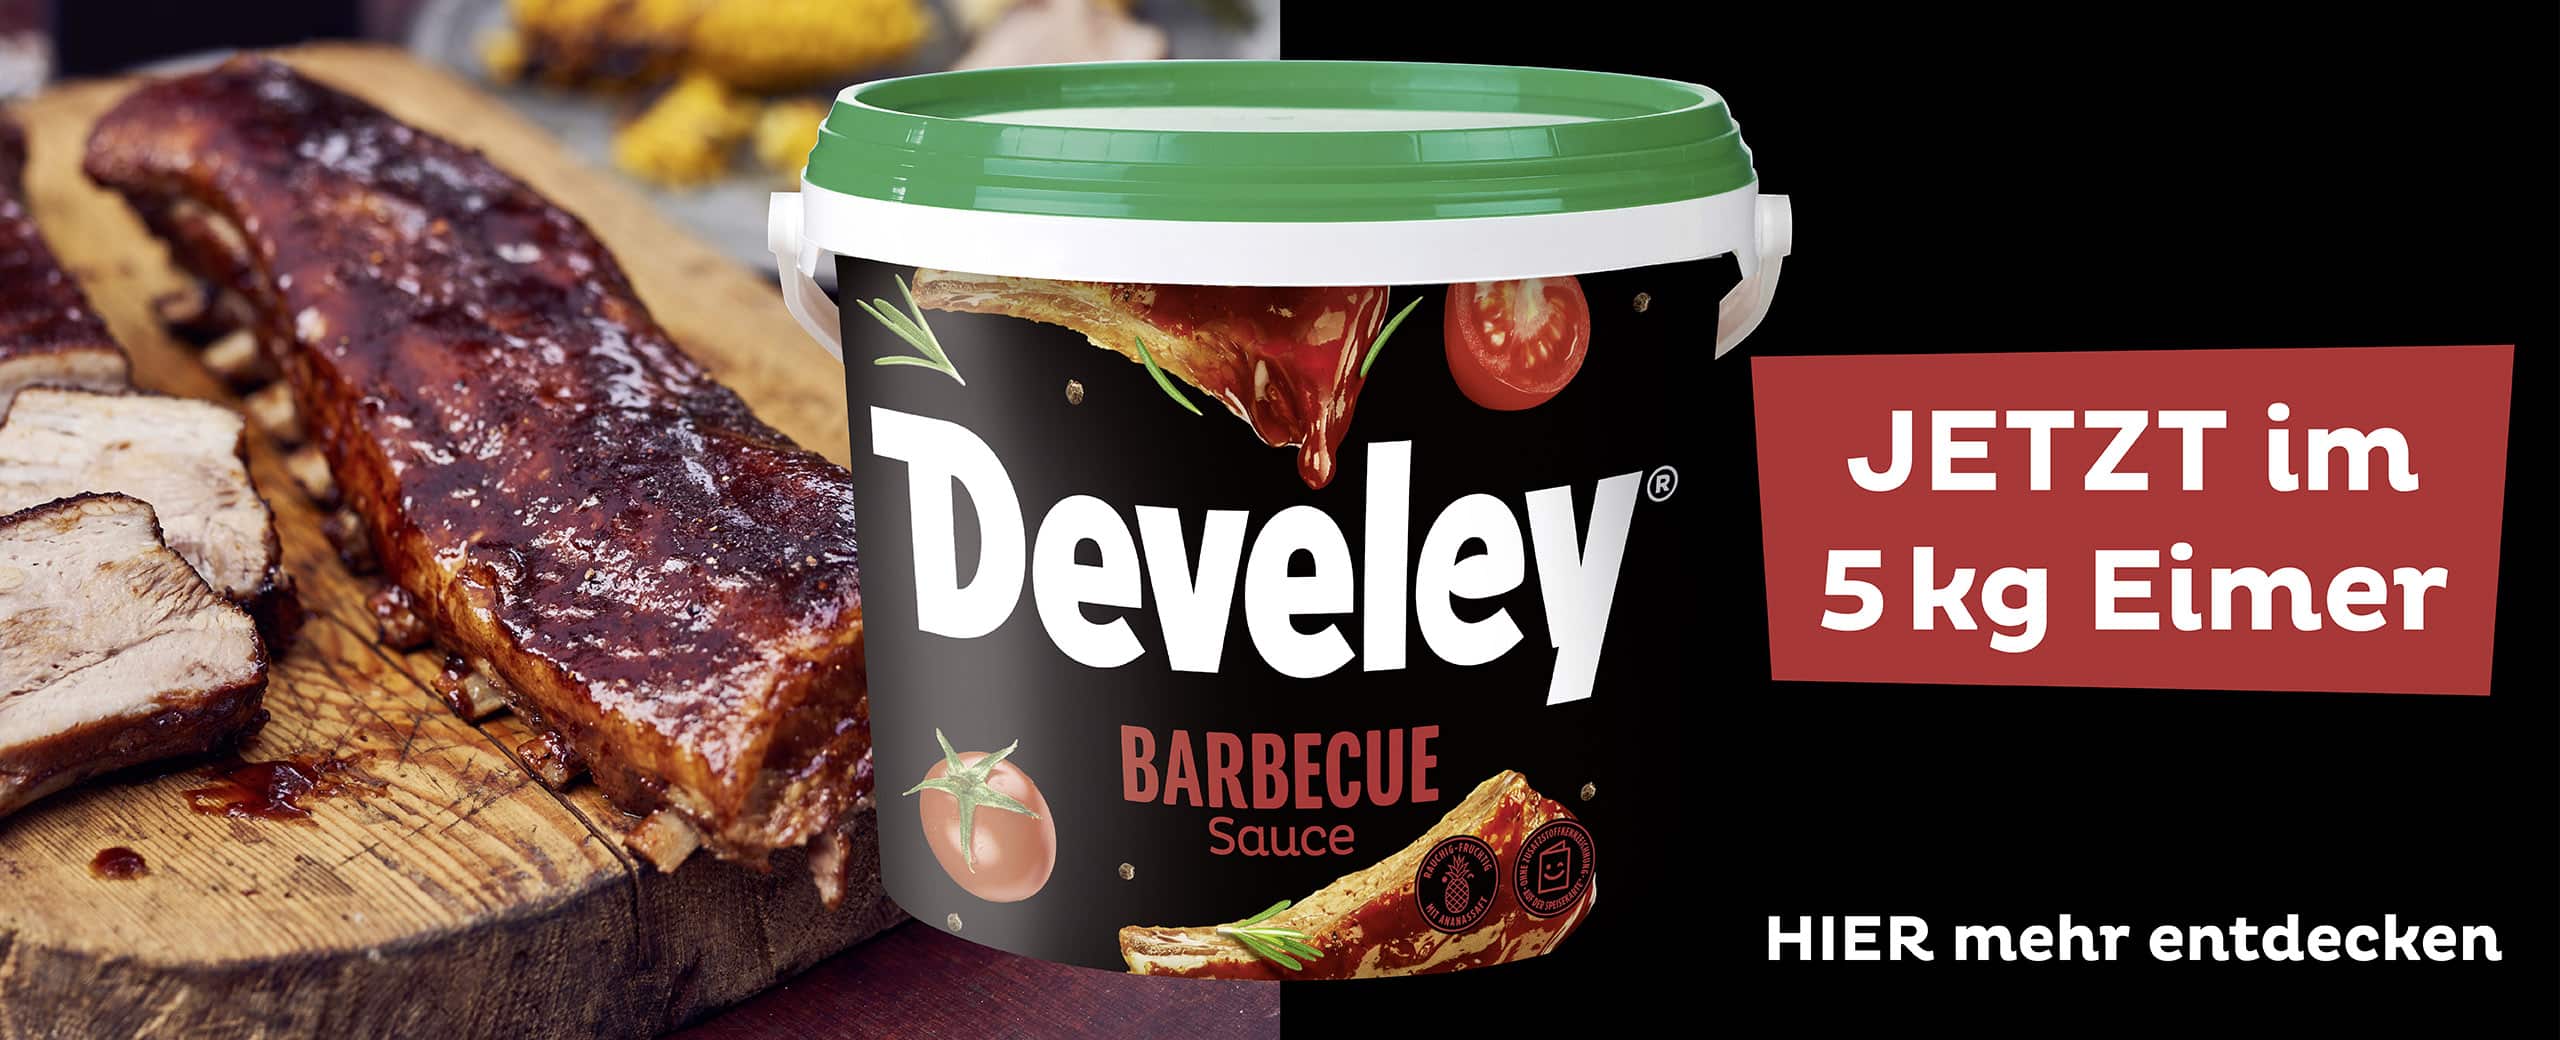 Develey Foodservice Barbecue Sauce Eimer 5kg Slider Desktop 2560x1040 LO2